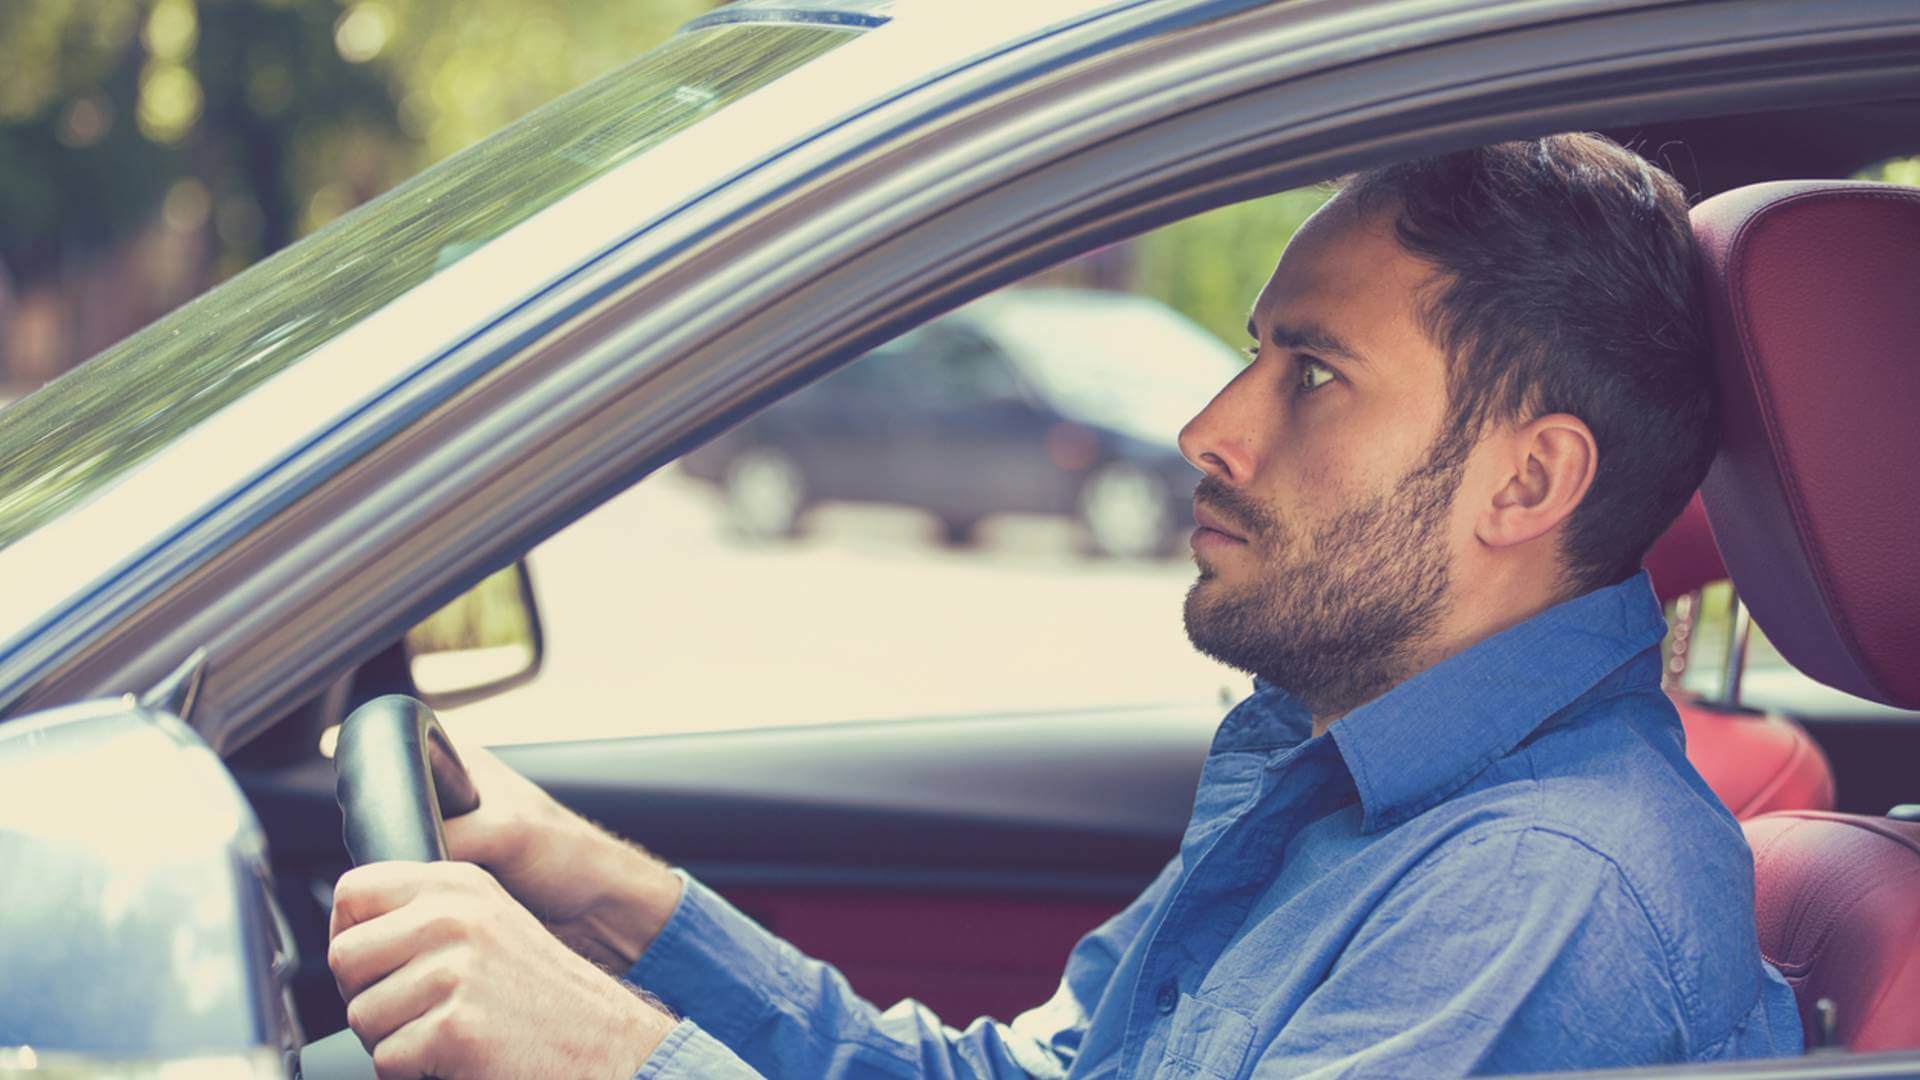 10 водительских психотипов по манере держать руль. Найди себя!